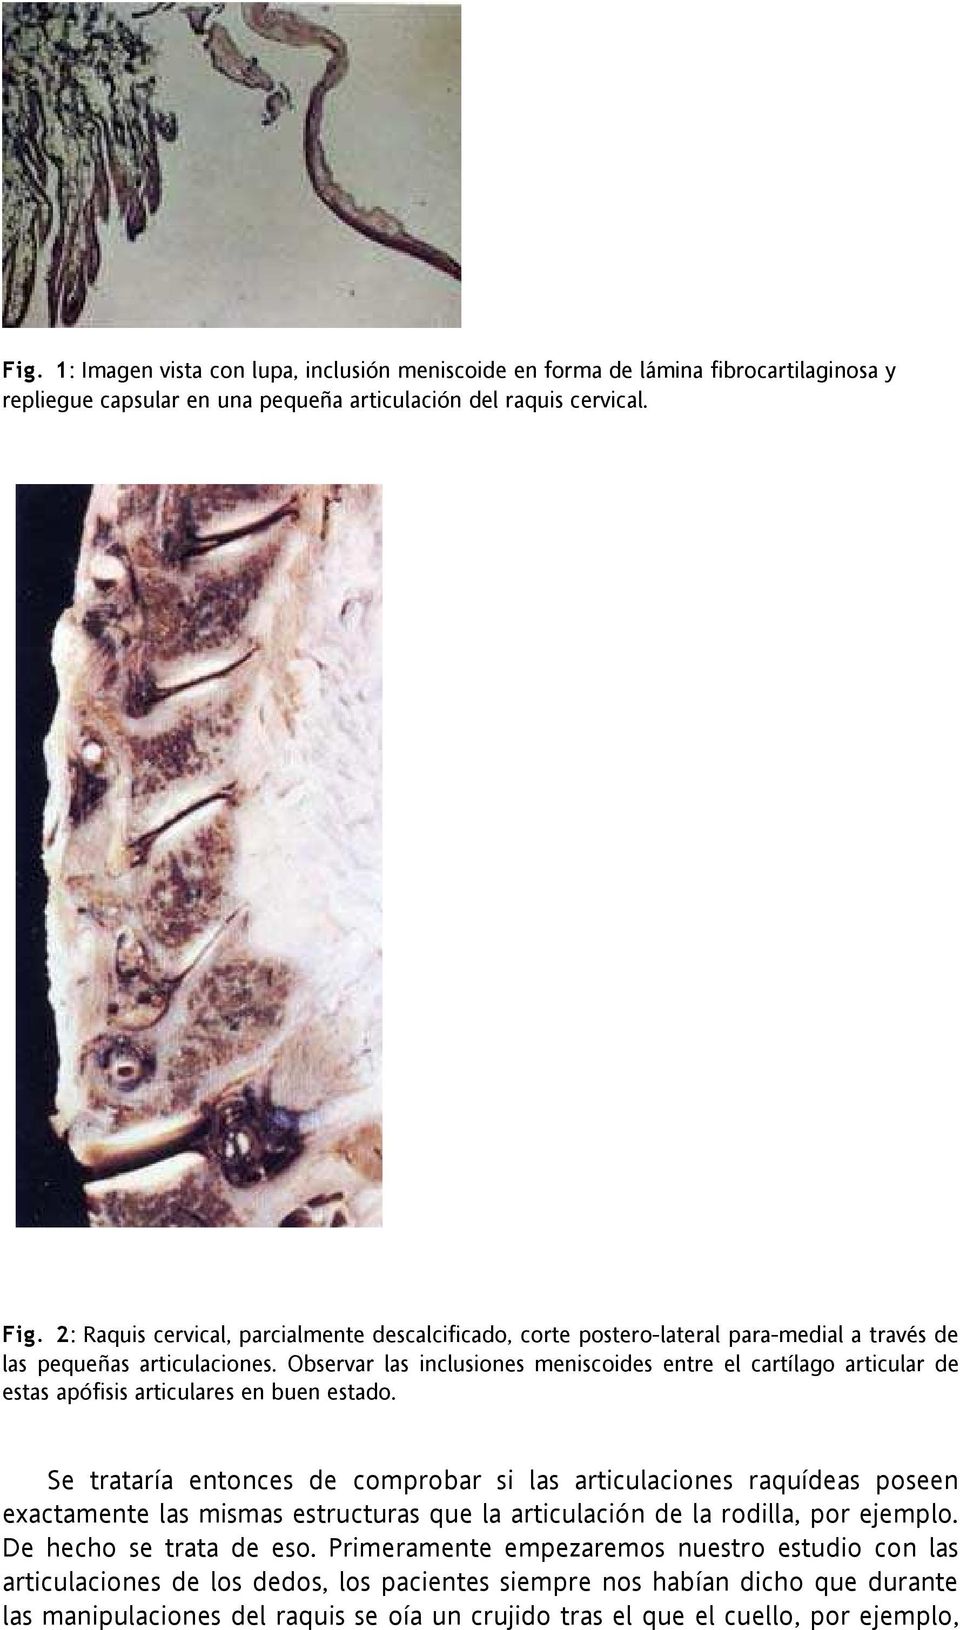 Observar las inclusiones meniscoides entre el cartílago articular de estas apófisis articulares en buen estado.